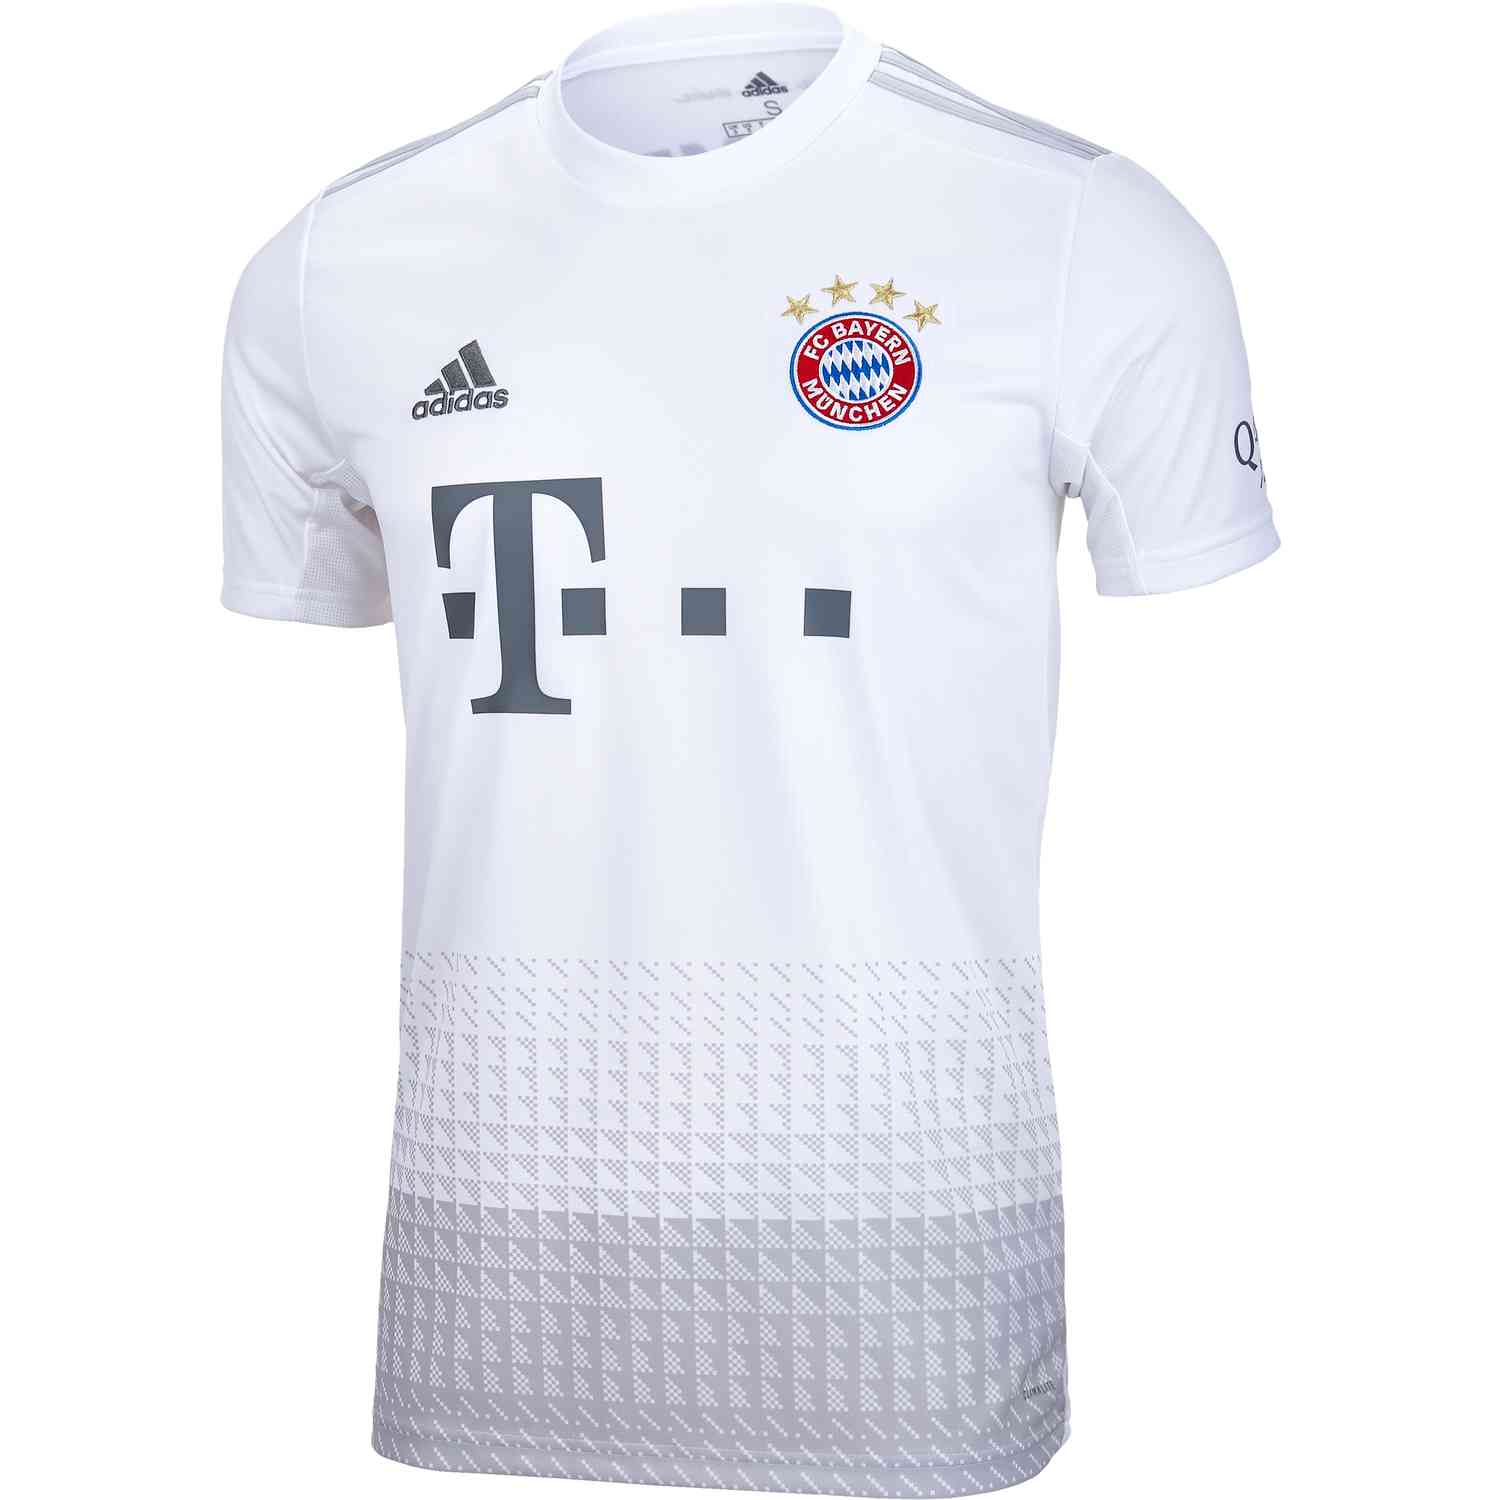 2019/20 adidas Bayern Munich Away Jersey - SoccerPro